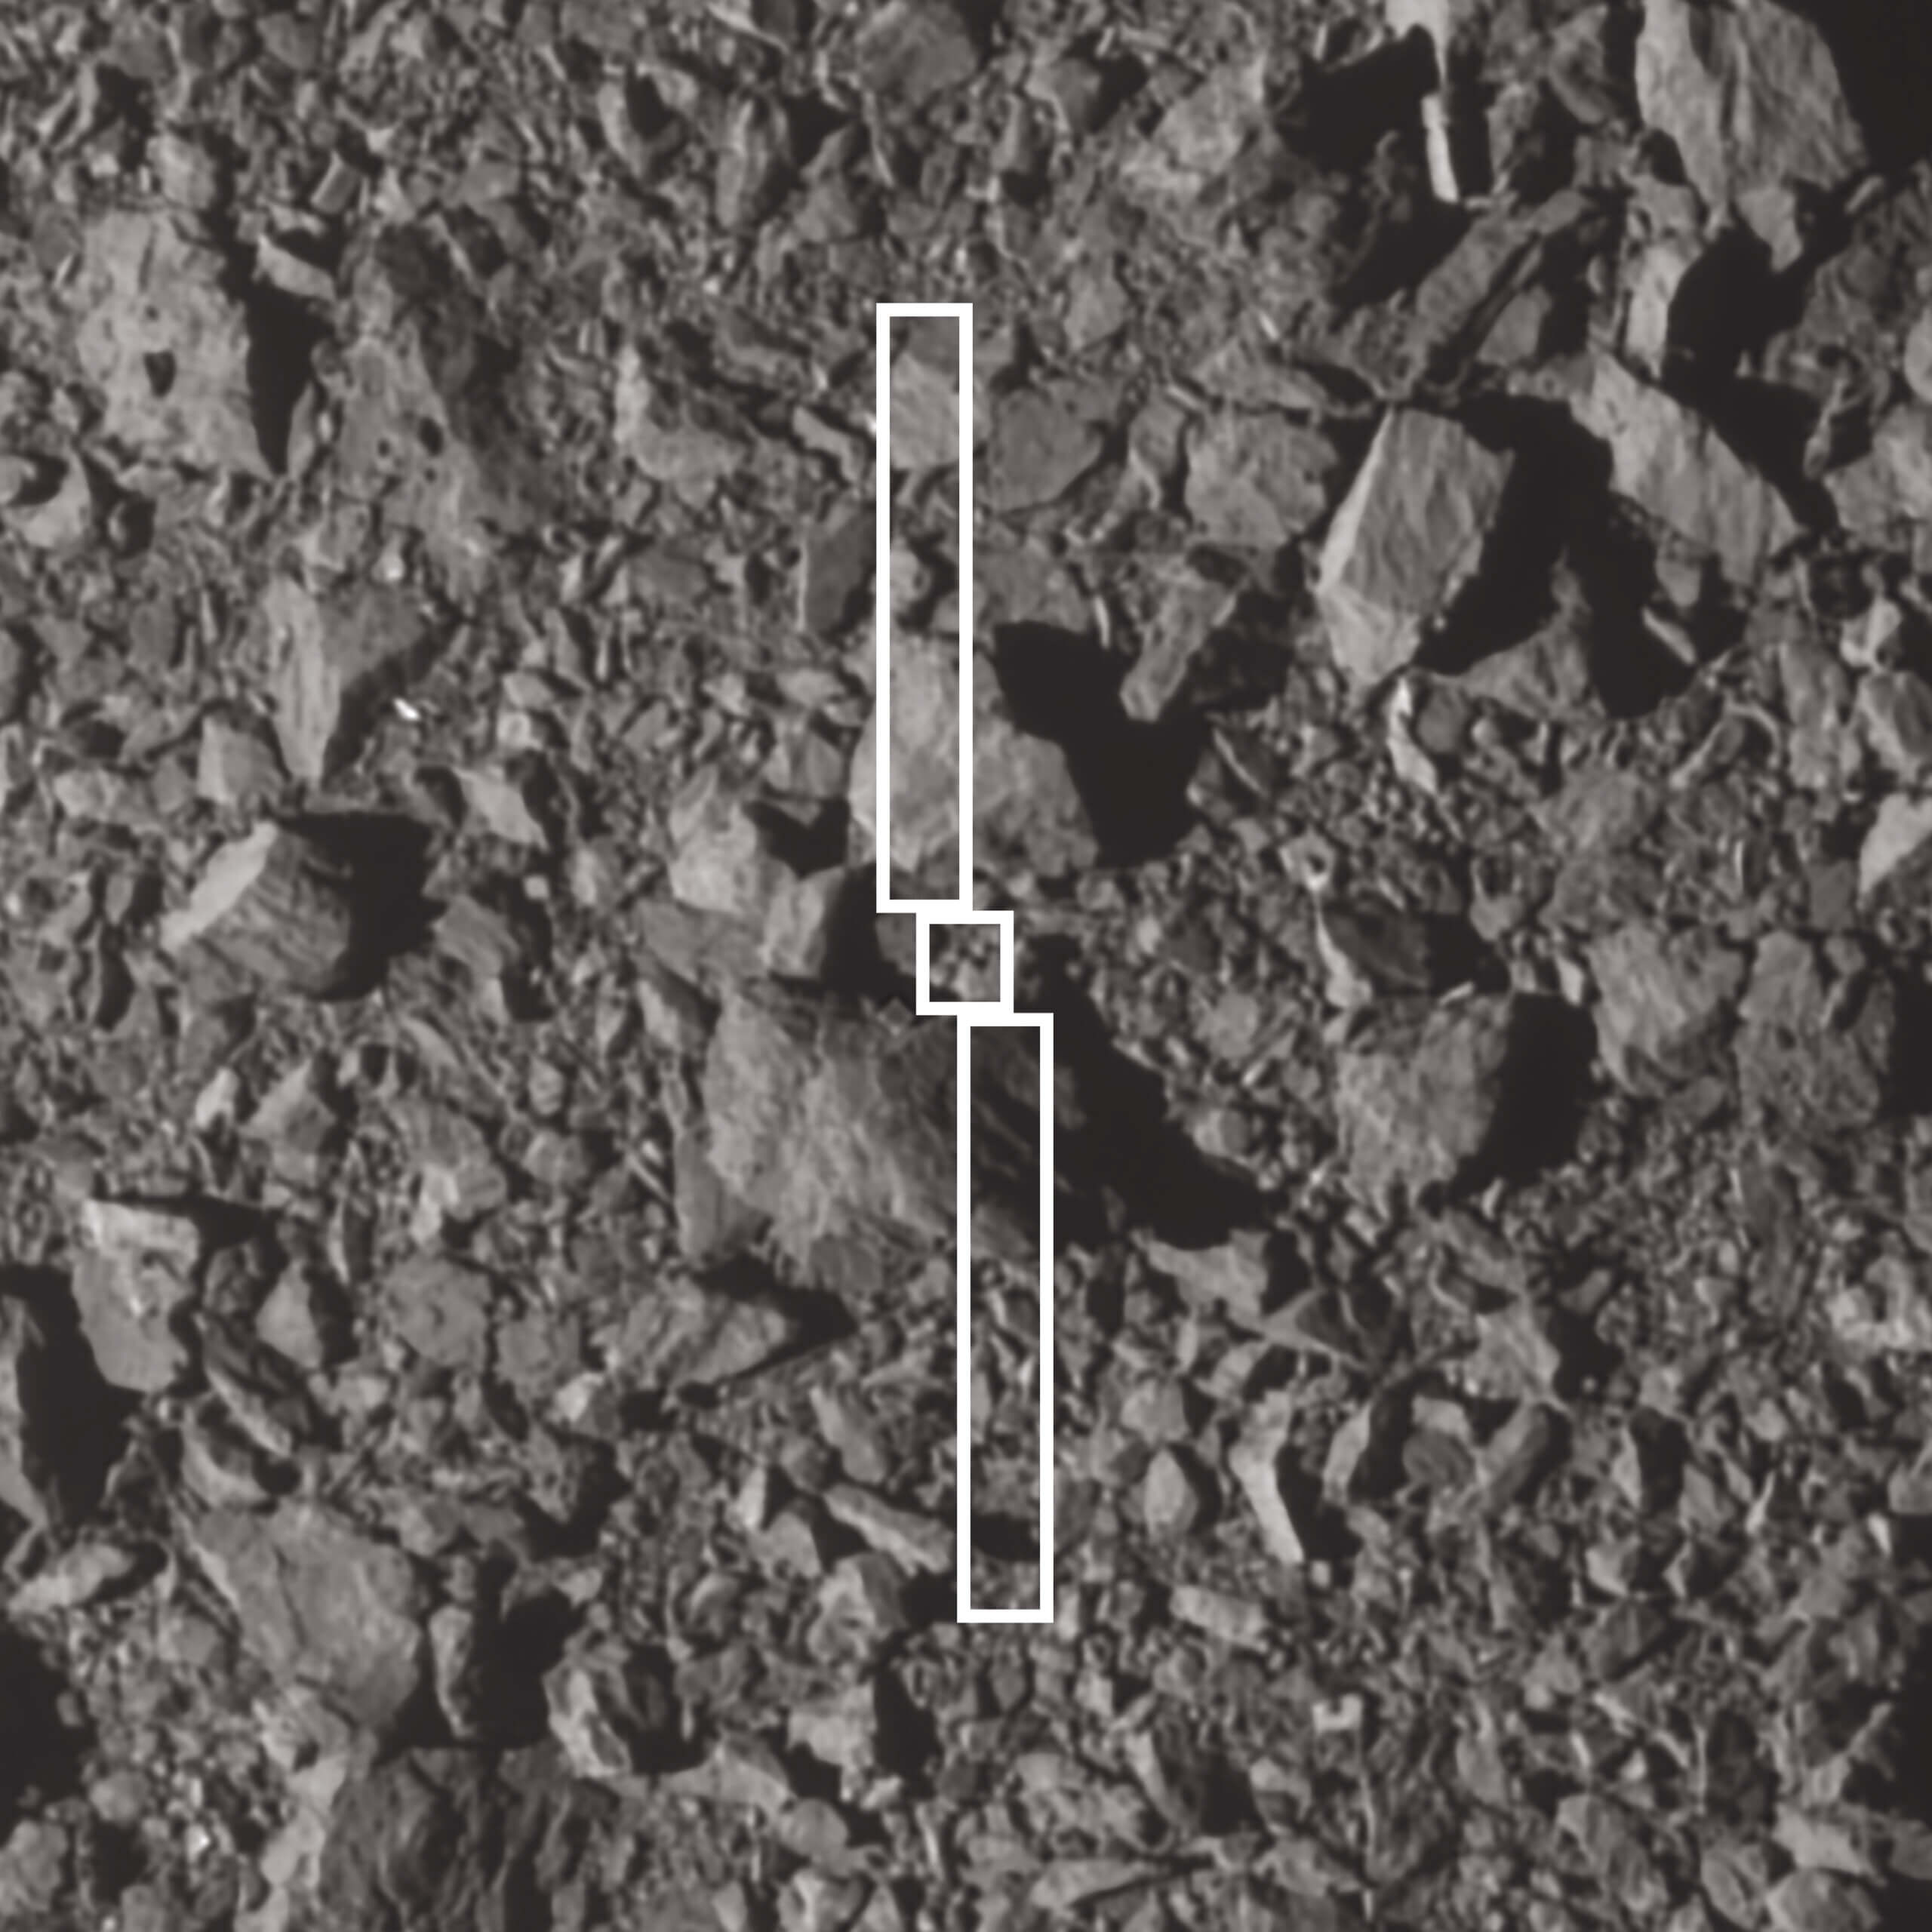 تُظهر هذه الصورة أثر المركبة الفضائية DART ولوحيها الشمسيين الطويلين فوق النقطة التي اصطدمت فيها بكويكب ثنائي الشكل. ويبلغ عرض الصخرة الأكبر بالقرب من موقع الارتطام حوالي 6.5 متر. التقطت DART الصورة قبل ثلاث ثوان من الاصطدام. المصدر: ناسا/جونز هوبكنز APL